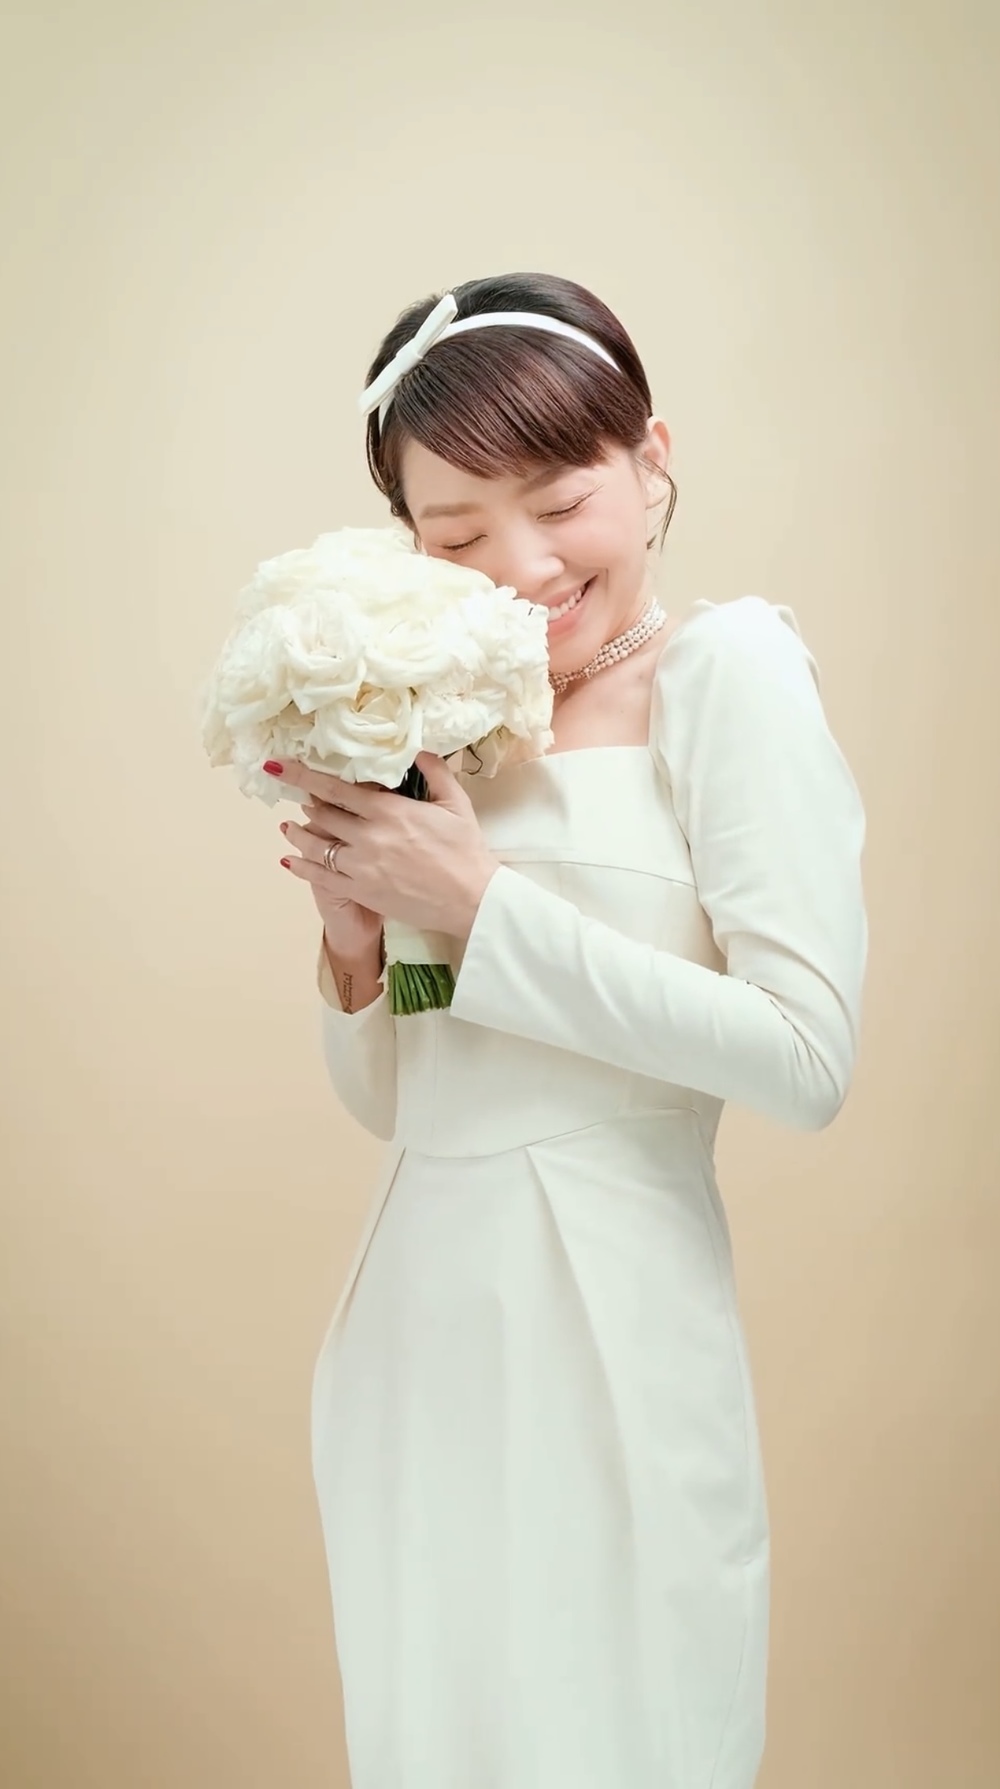 Tóc Tiên gây chú ý khi hóa thành cô dâu xinh đẹp trong teaser MV mới